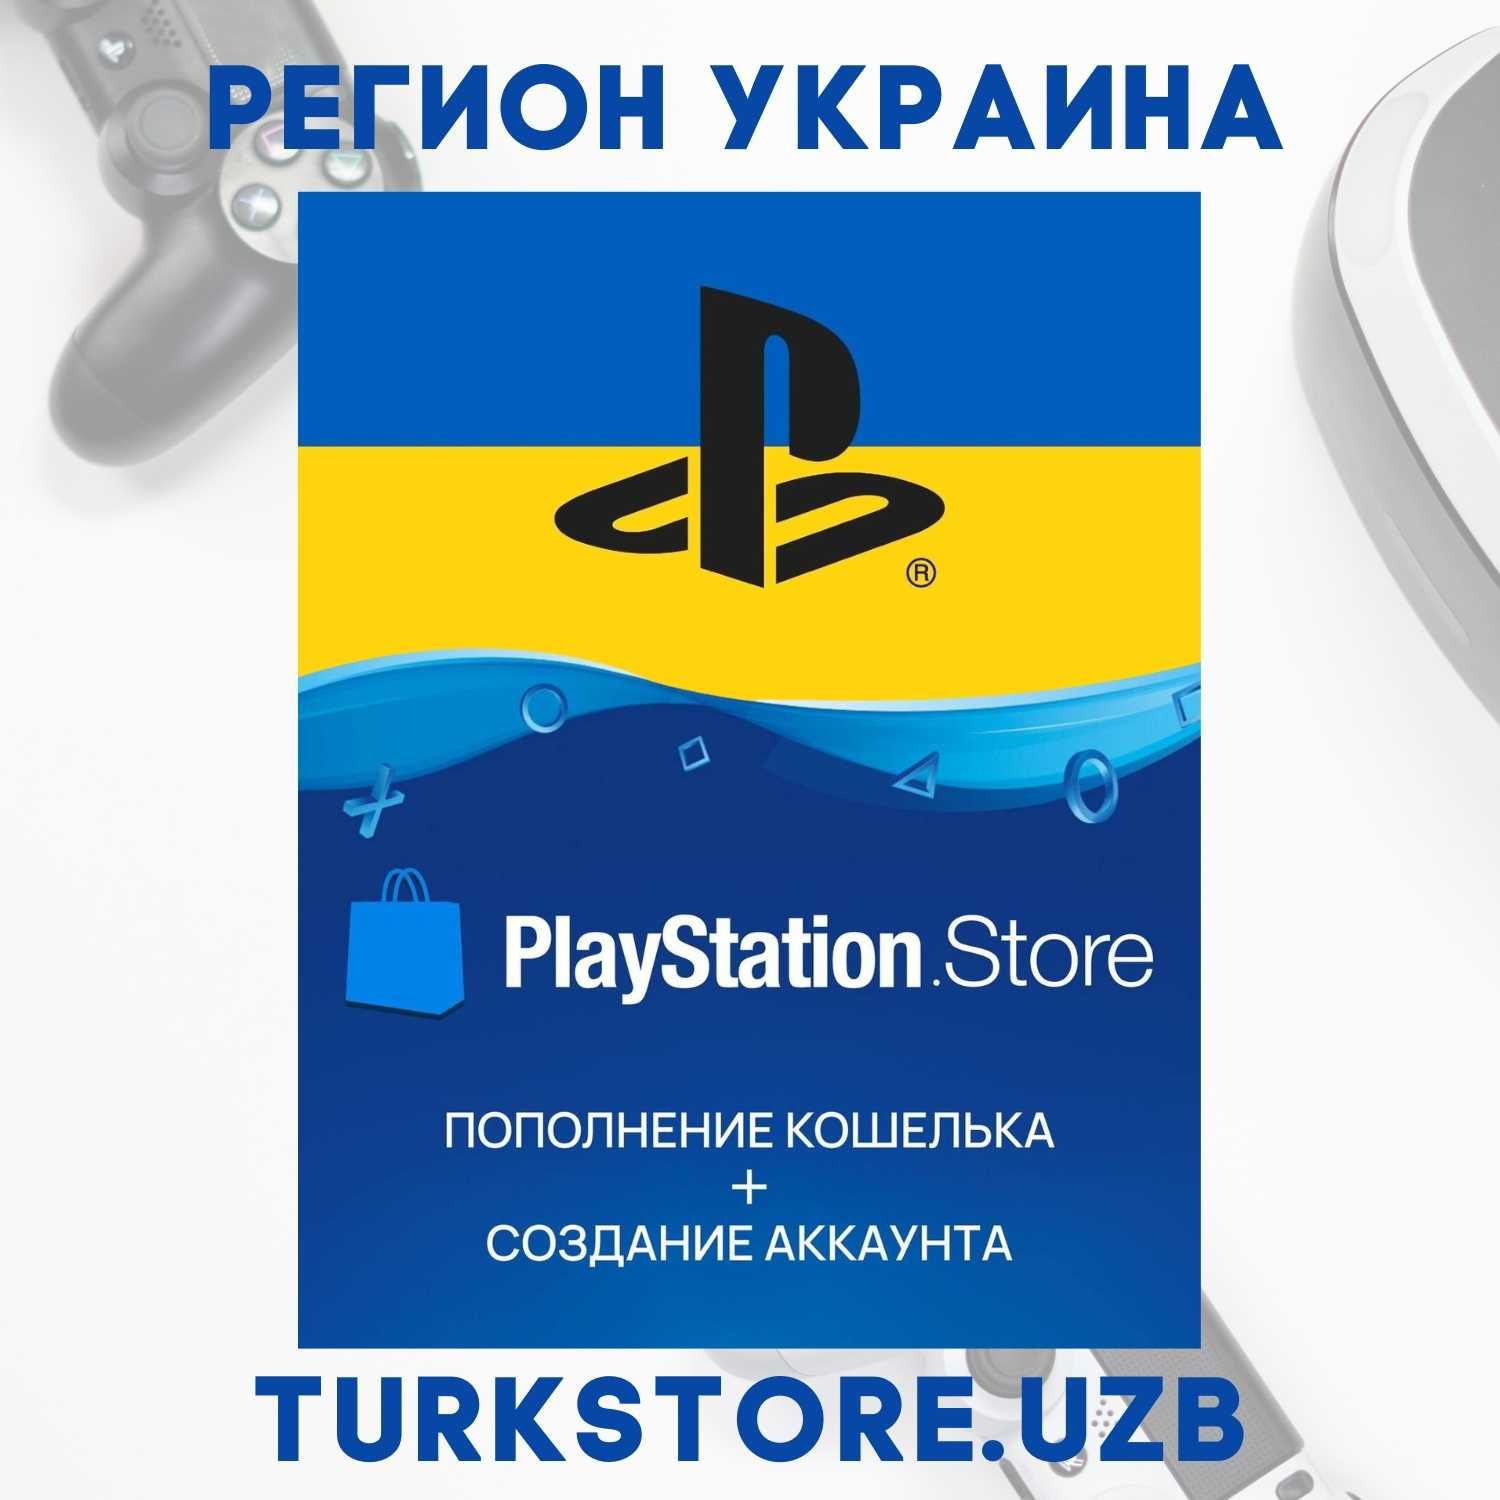 Пополнение вашего PlayStation Store Кошелька, Регион Украина (UAH), PS